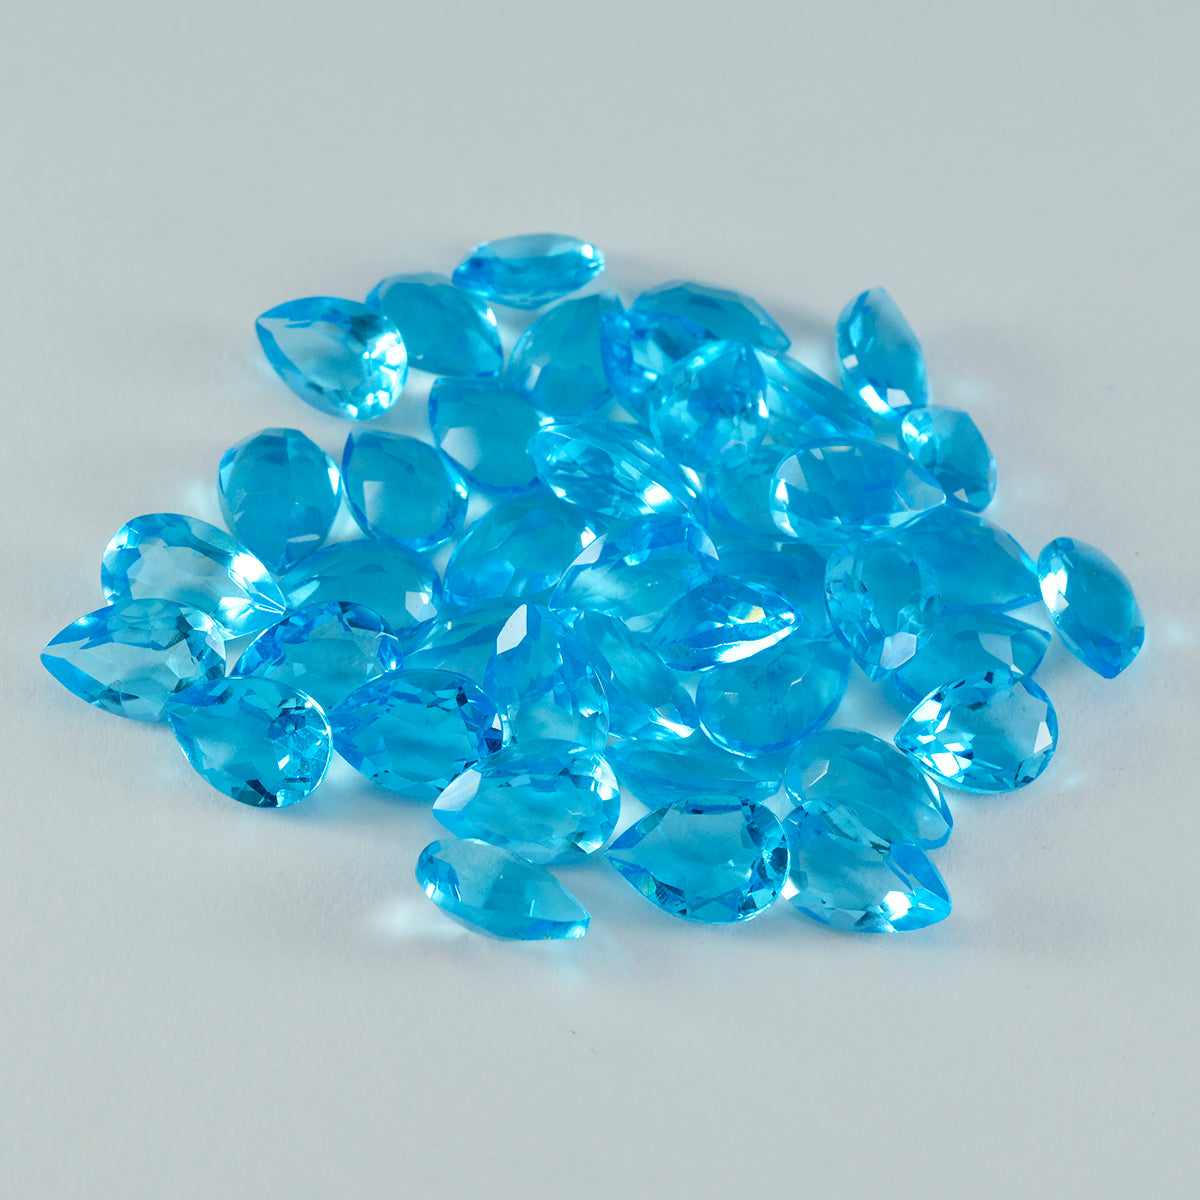 riyogems 1шт голубой топаз cz ограненный 5x7 мм драгоценный камень грушевидной формы удивительного качества